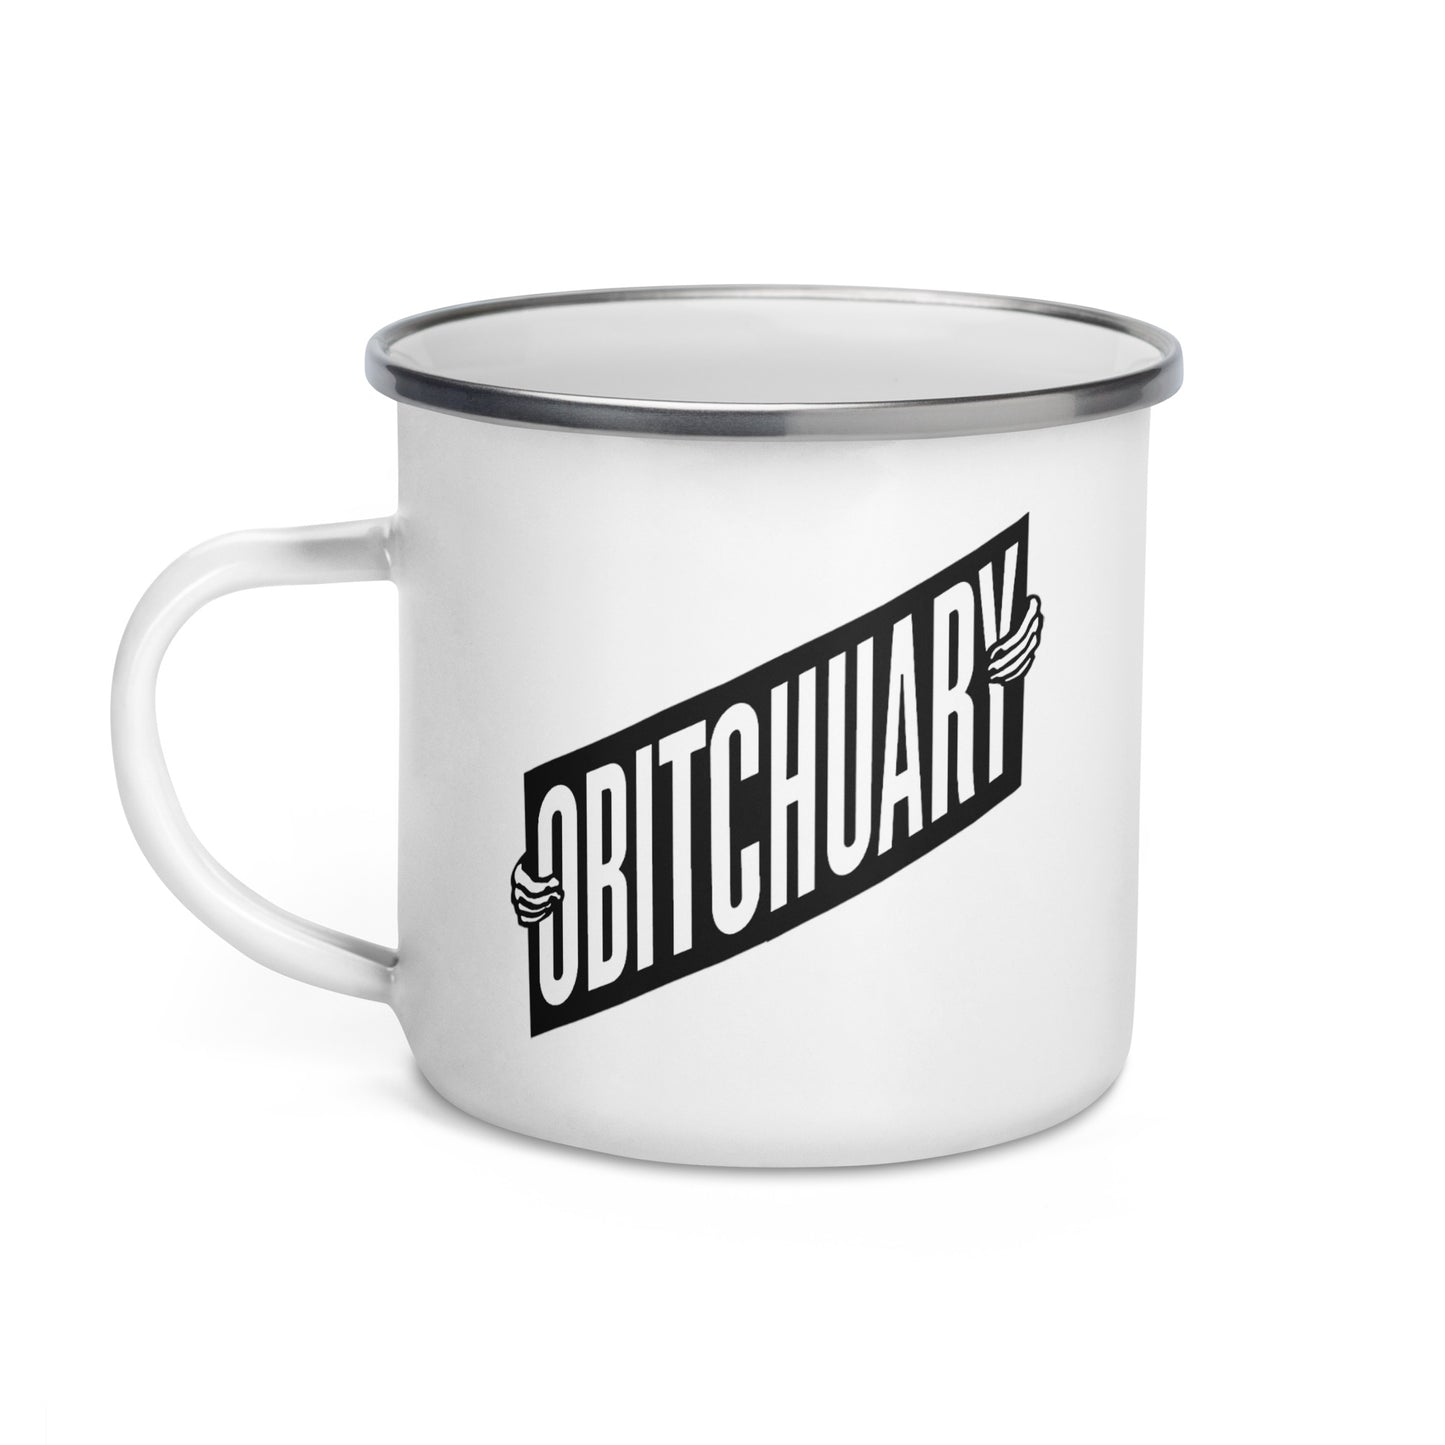 Obitchuary Logo Enamel Mug